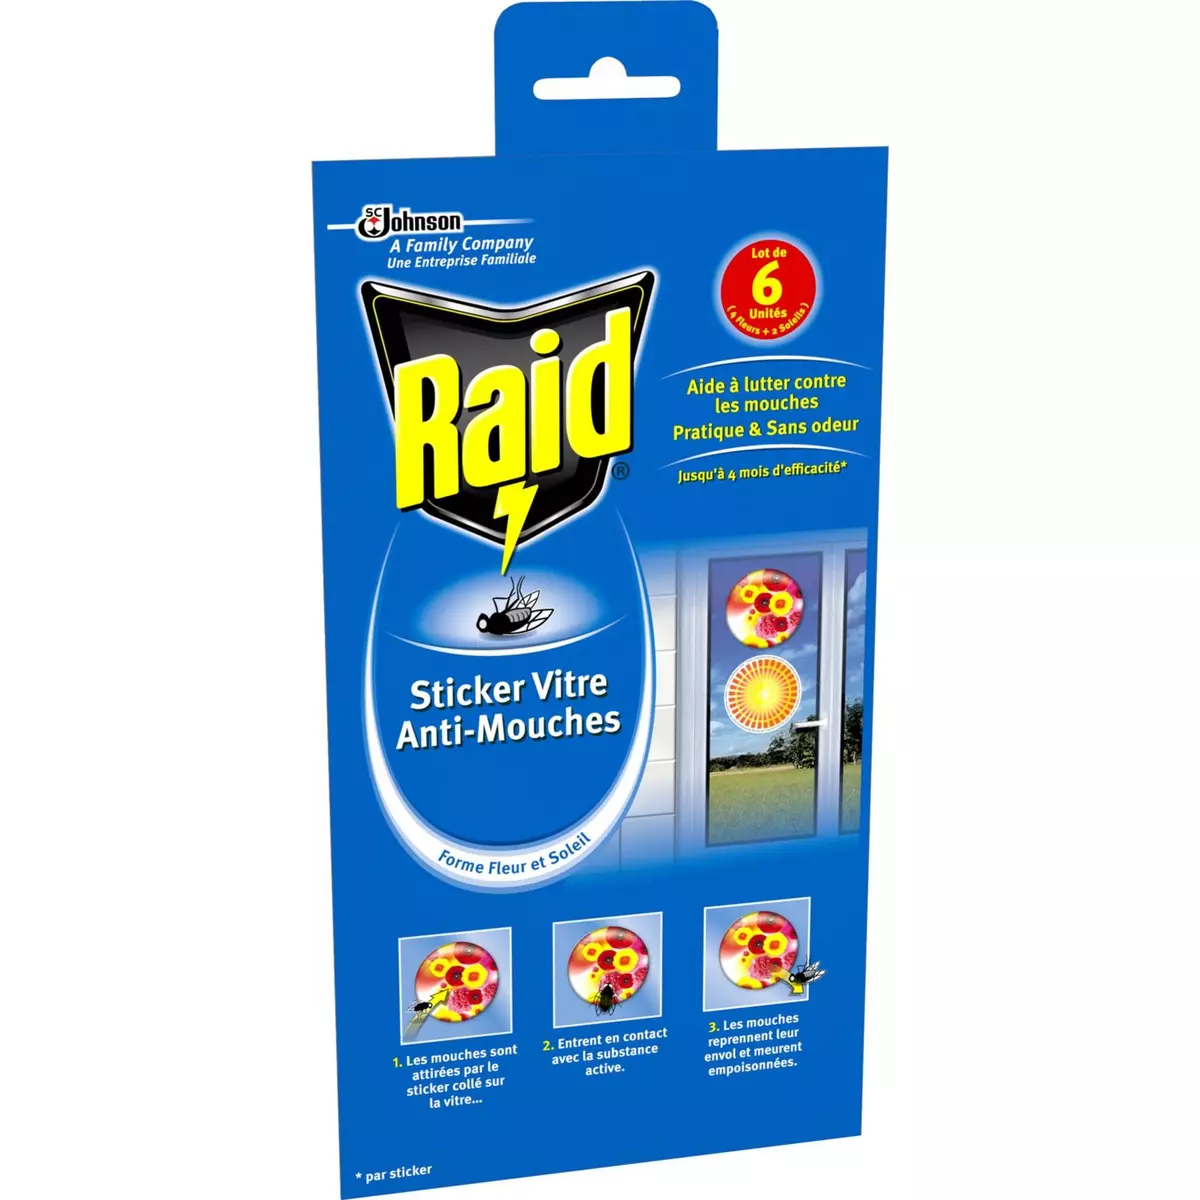 RAID Stickers fleurs vitre anti-mouches efficace 6x4 mois 6 stickers